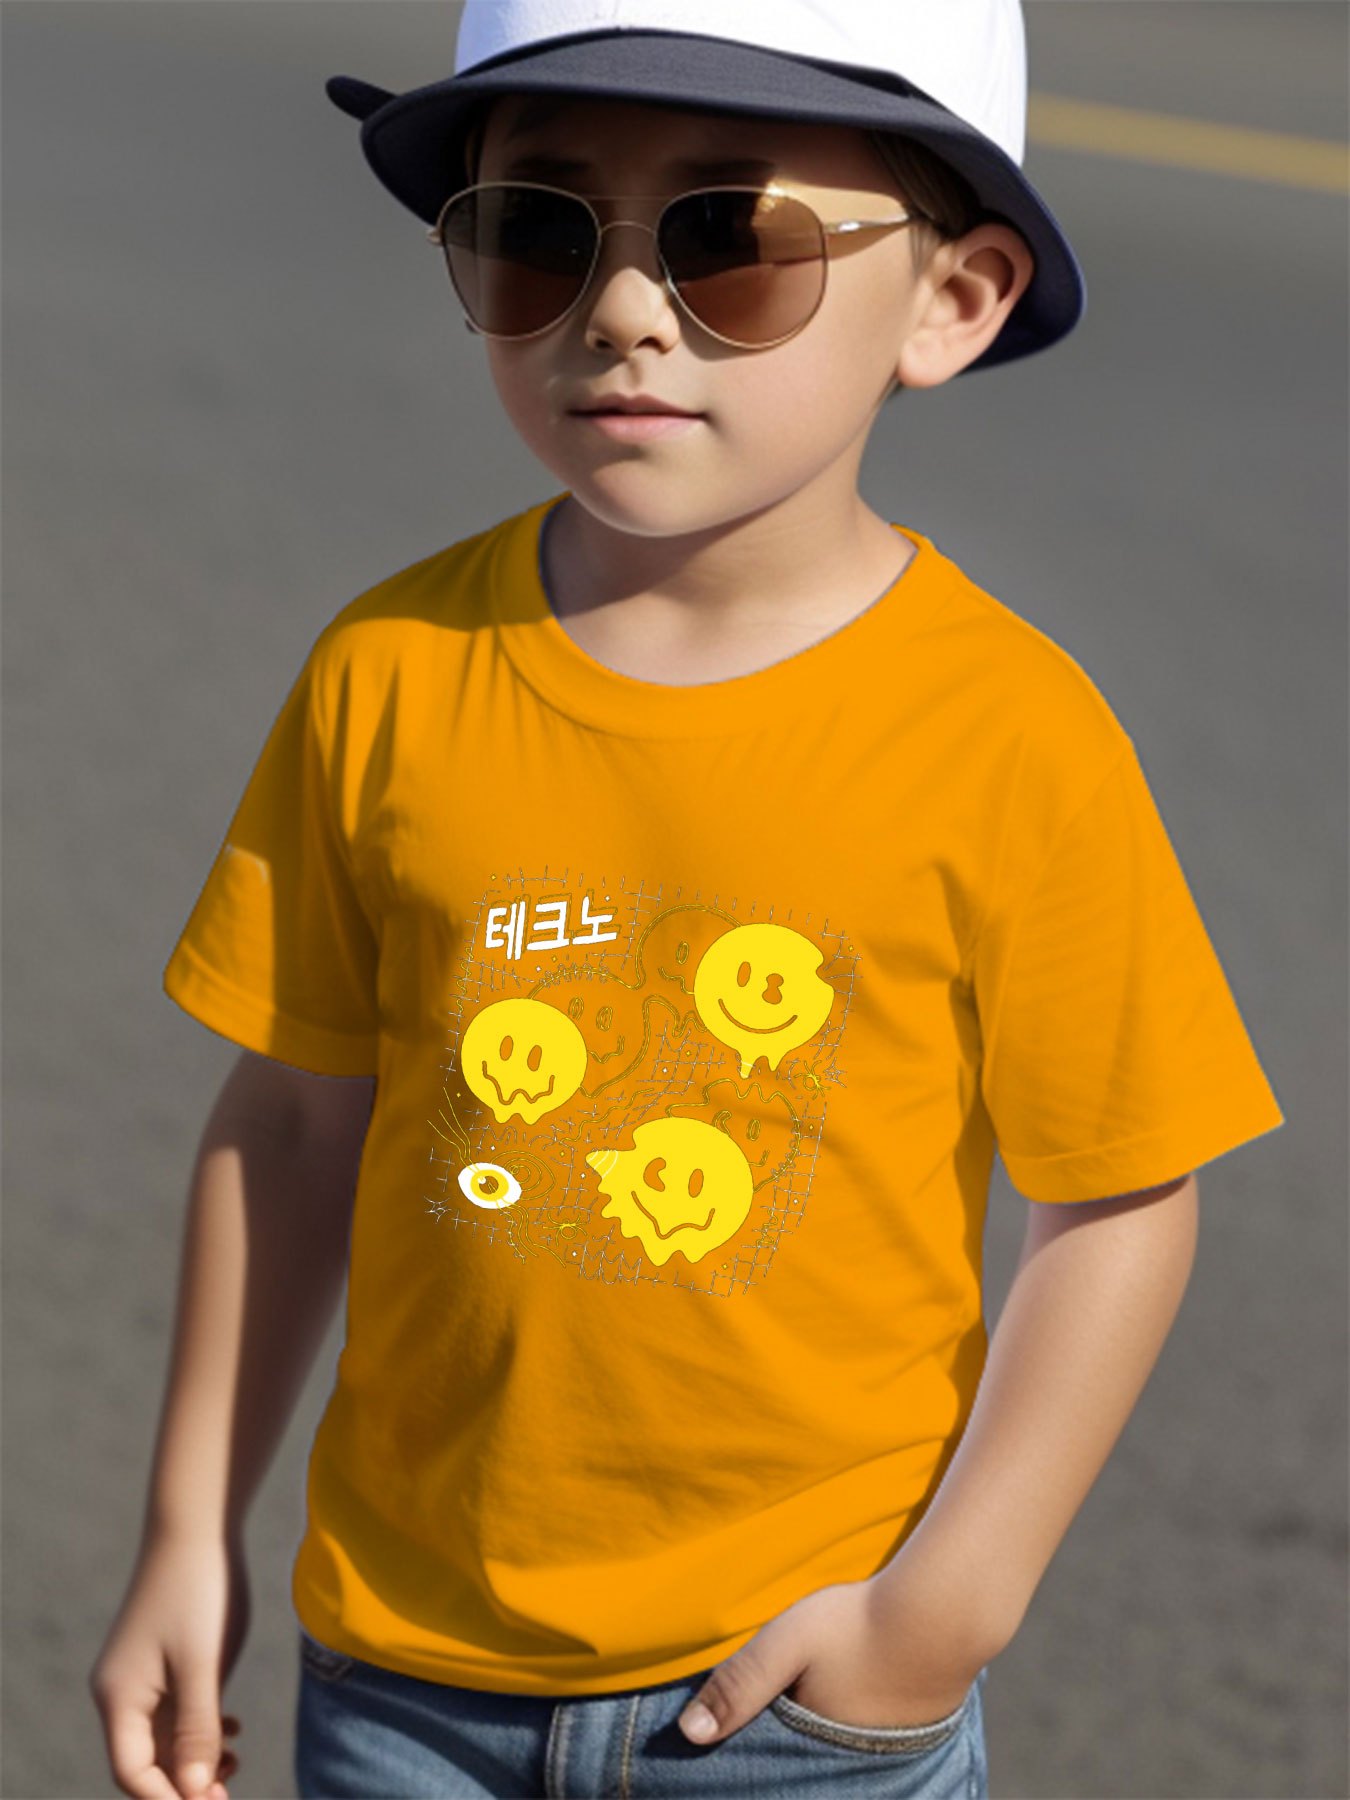 Un Retrato De Un Niño Sonriente En Una Camisa Amarilla Contra El